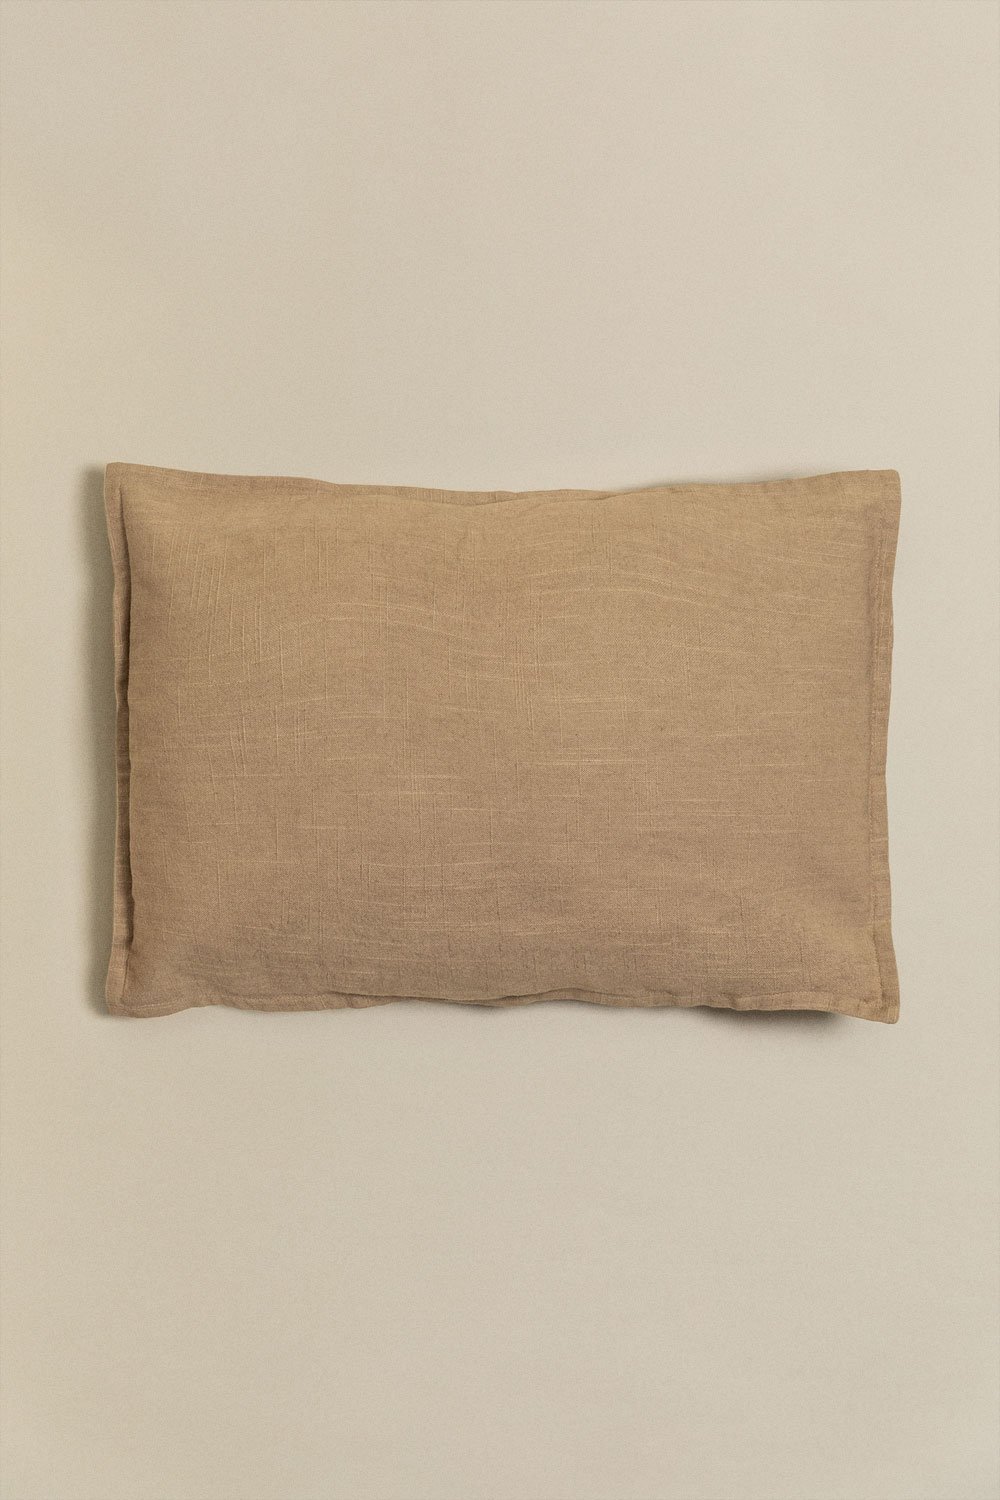 Coussin rectangulaire en coton (35x50 cm) Guillaume, image de la galerie 1